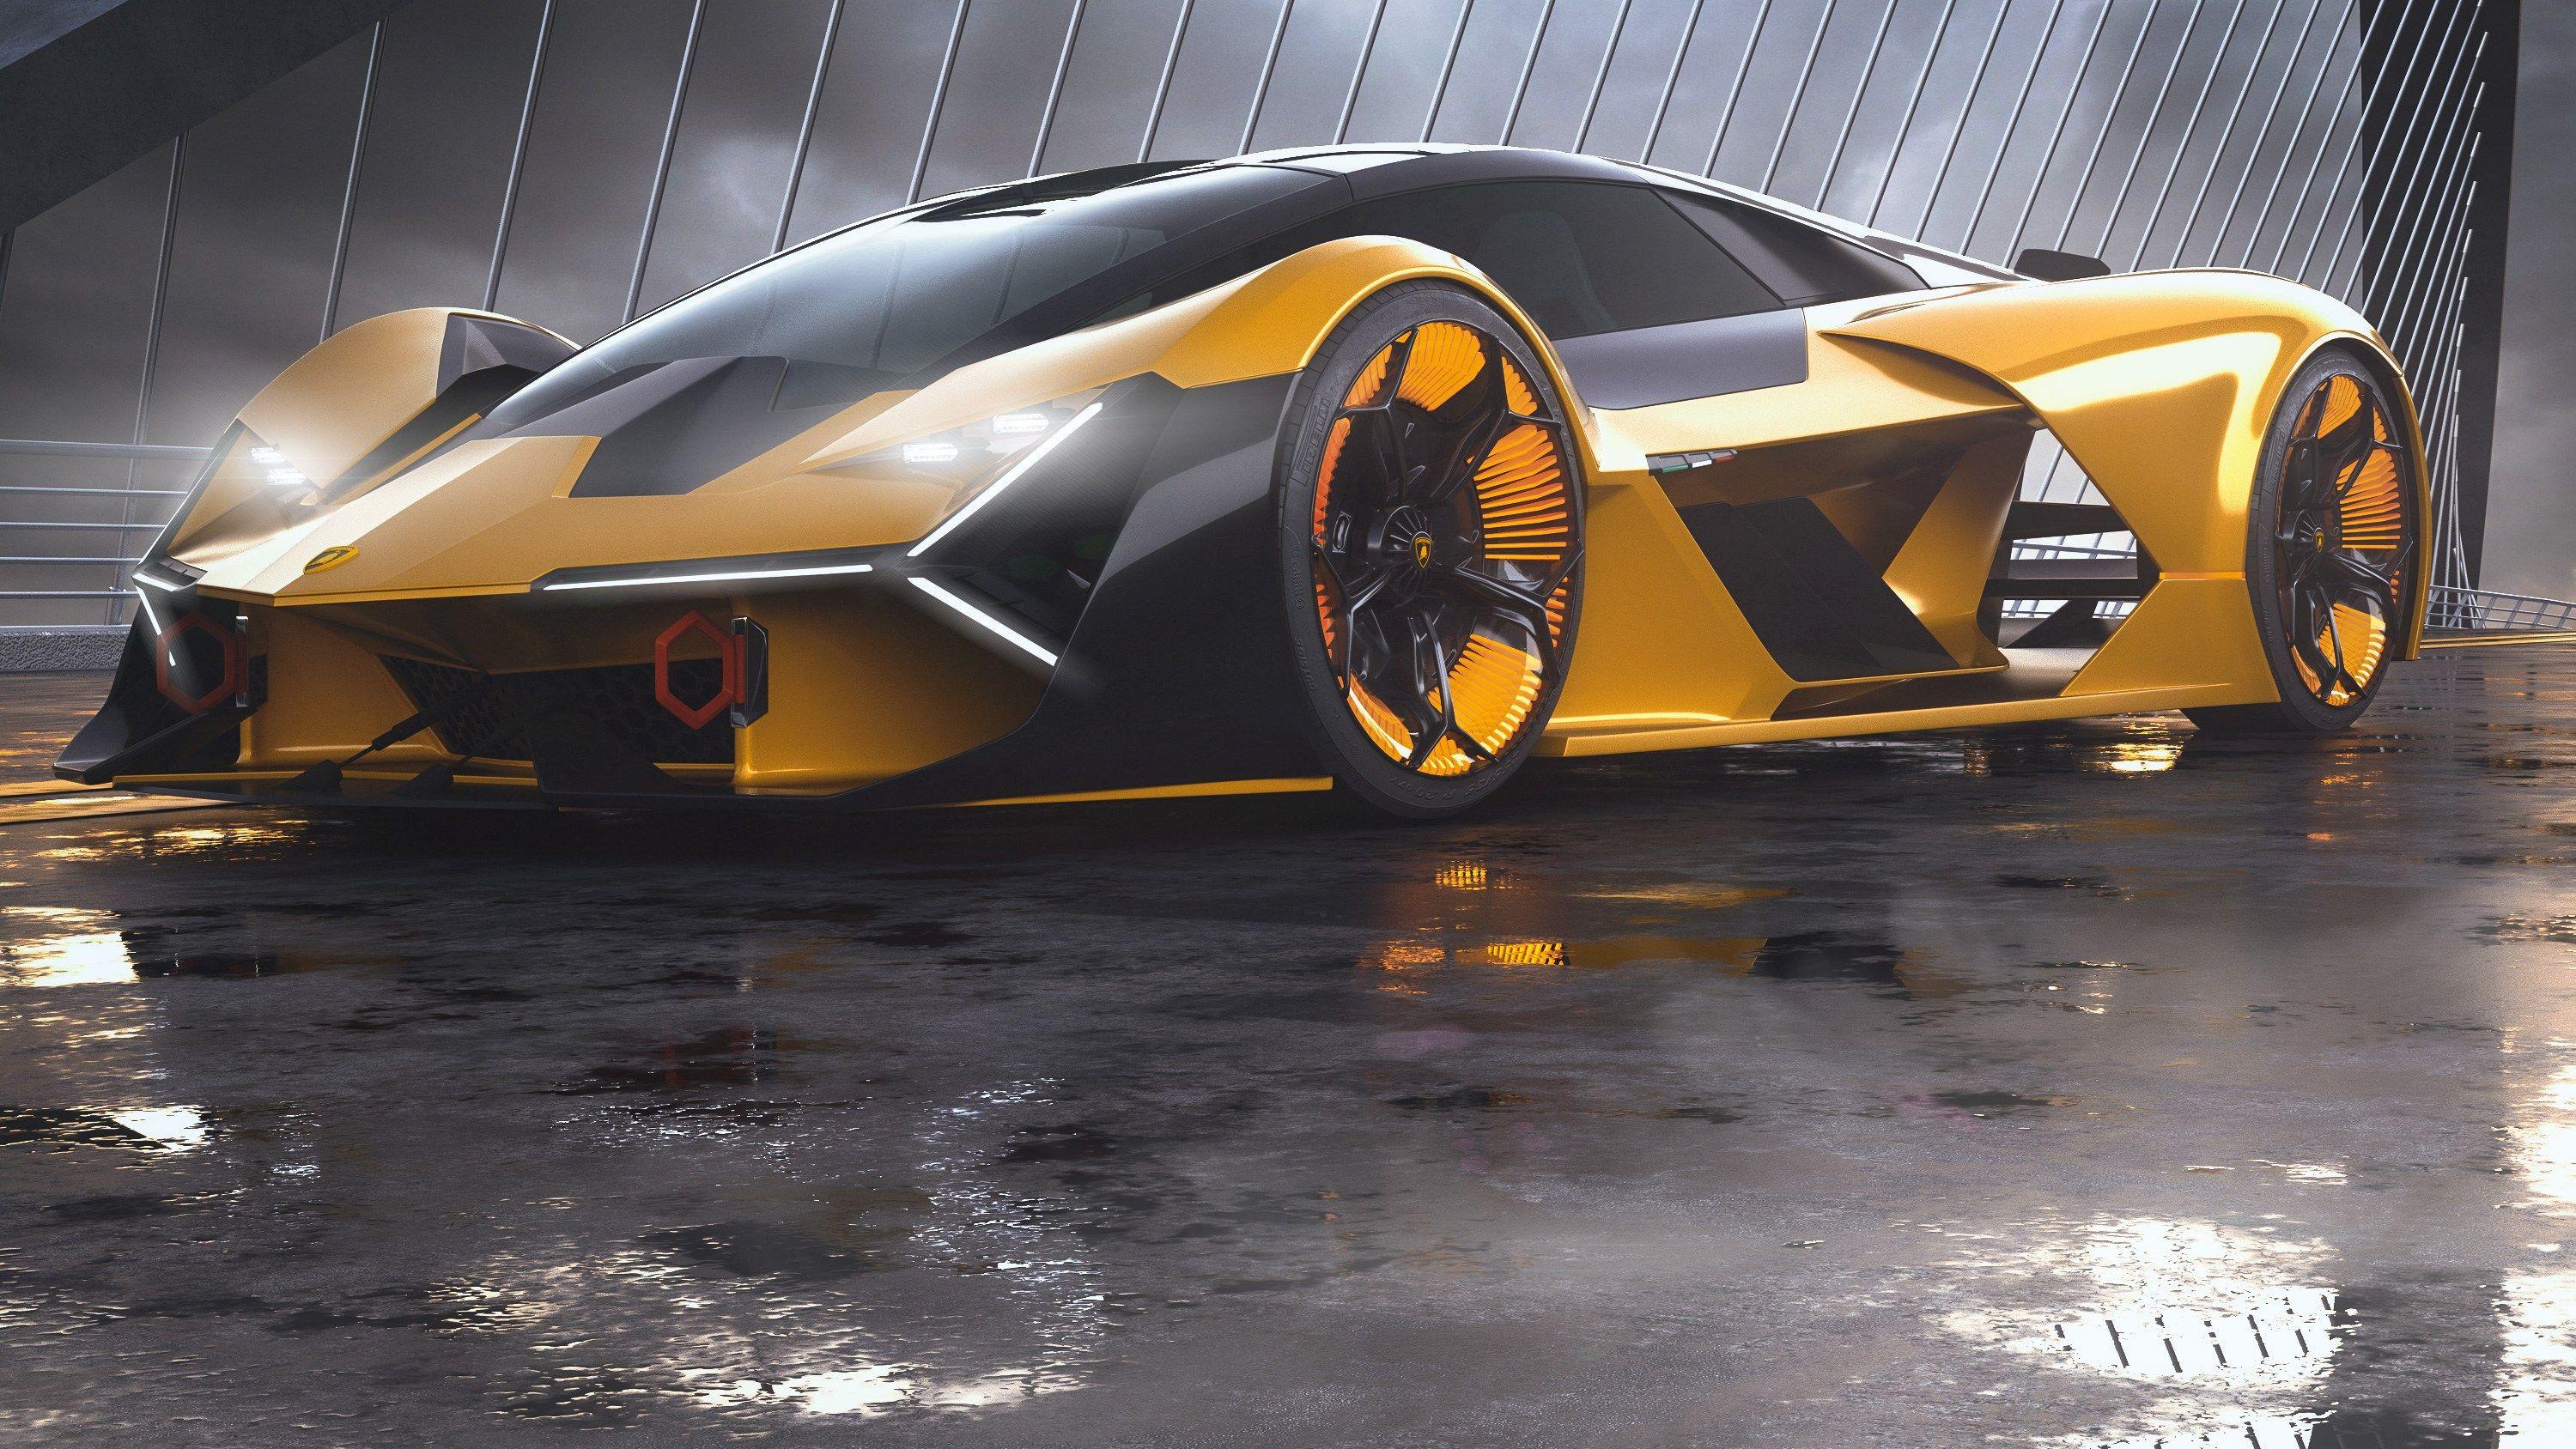 Lamborghini Terzo Millennio HD Cars 4k Wallpaper Image